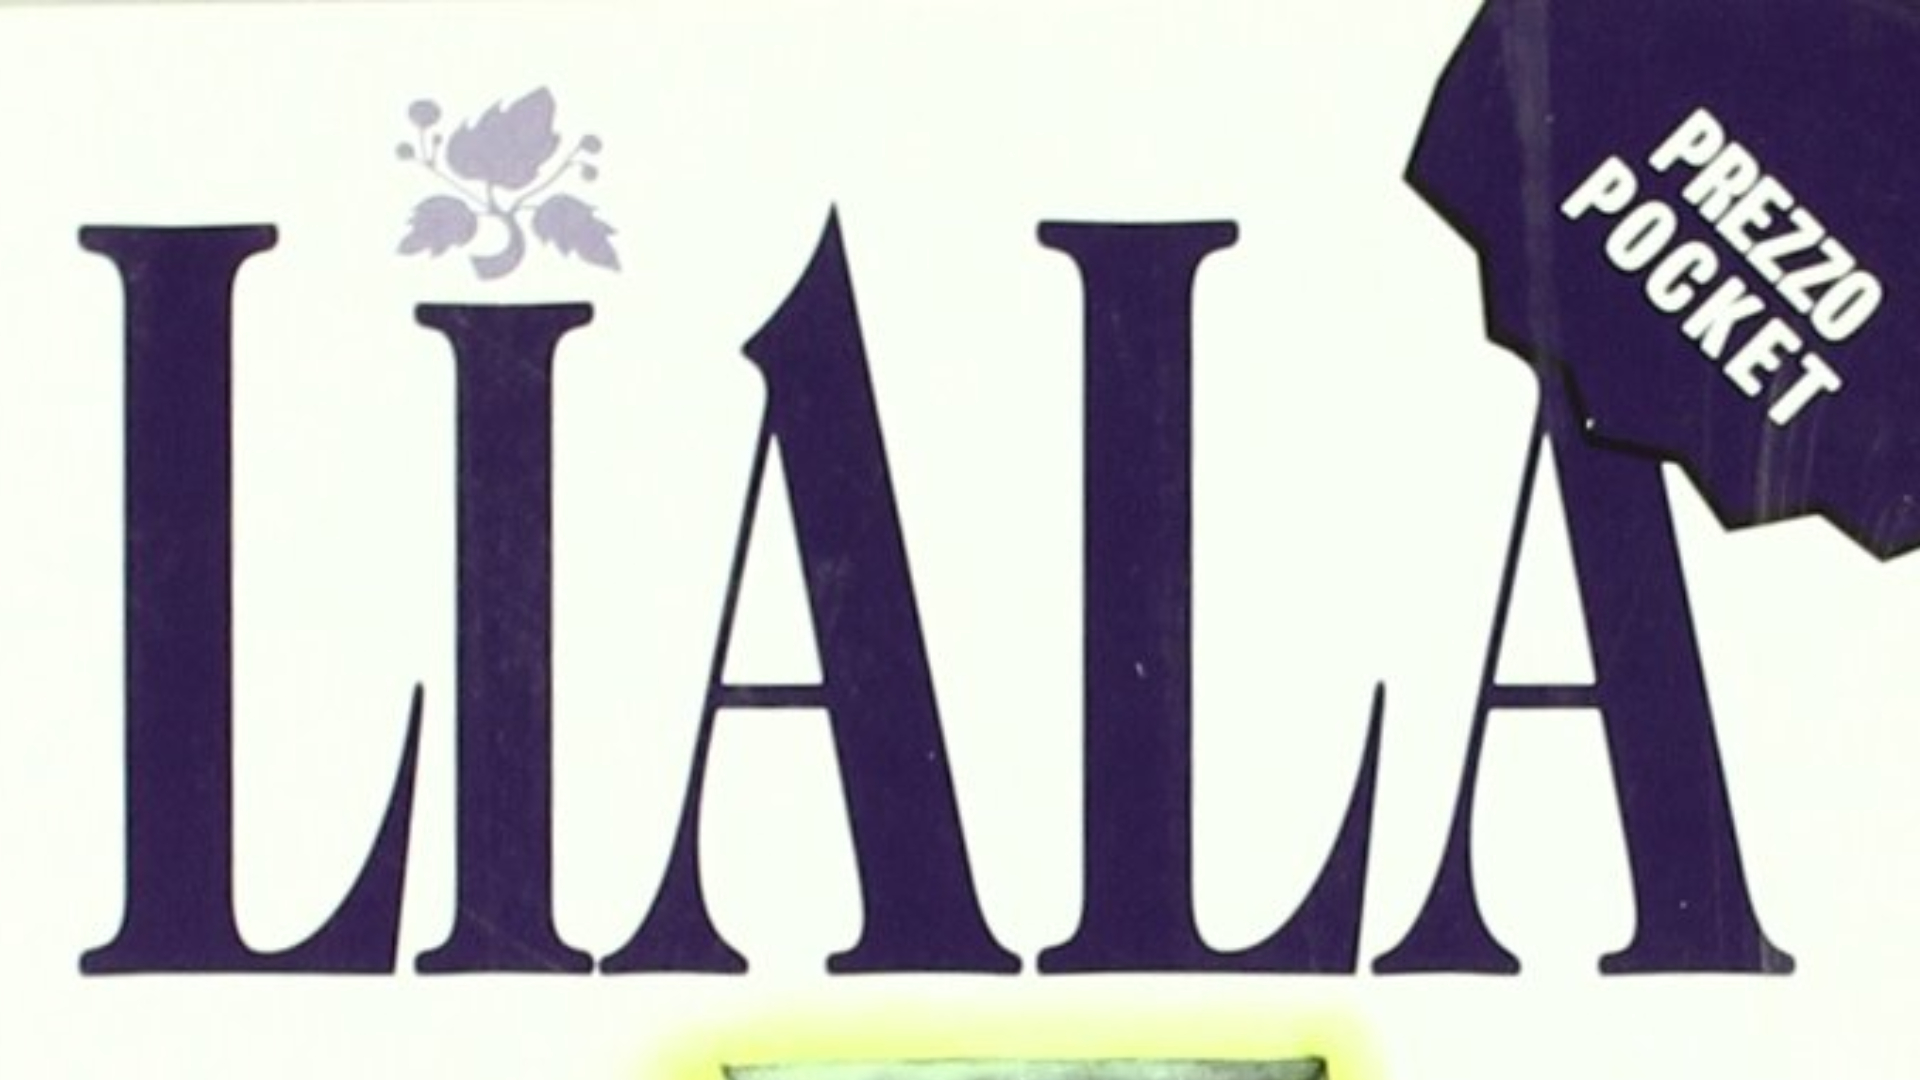 un dettaglio della copertina di un libro di liala